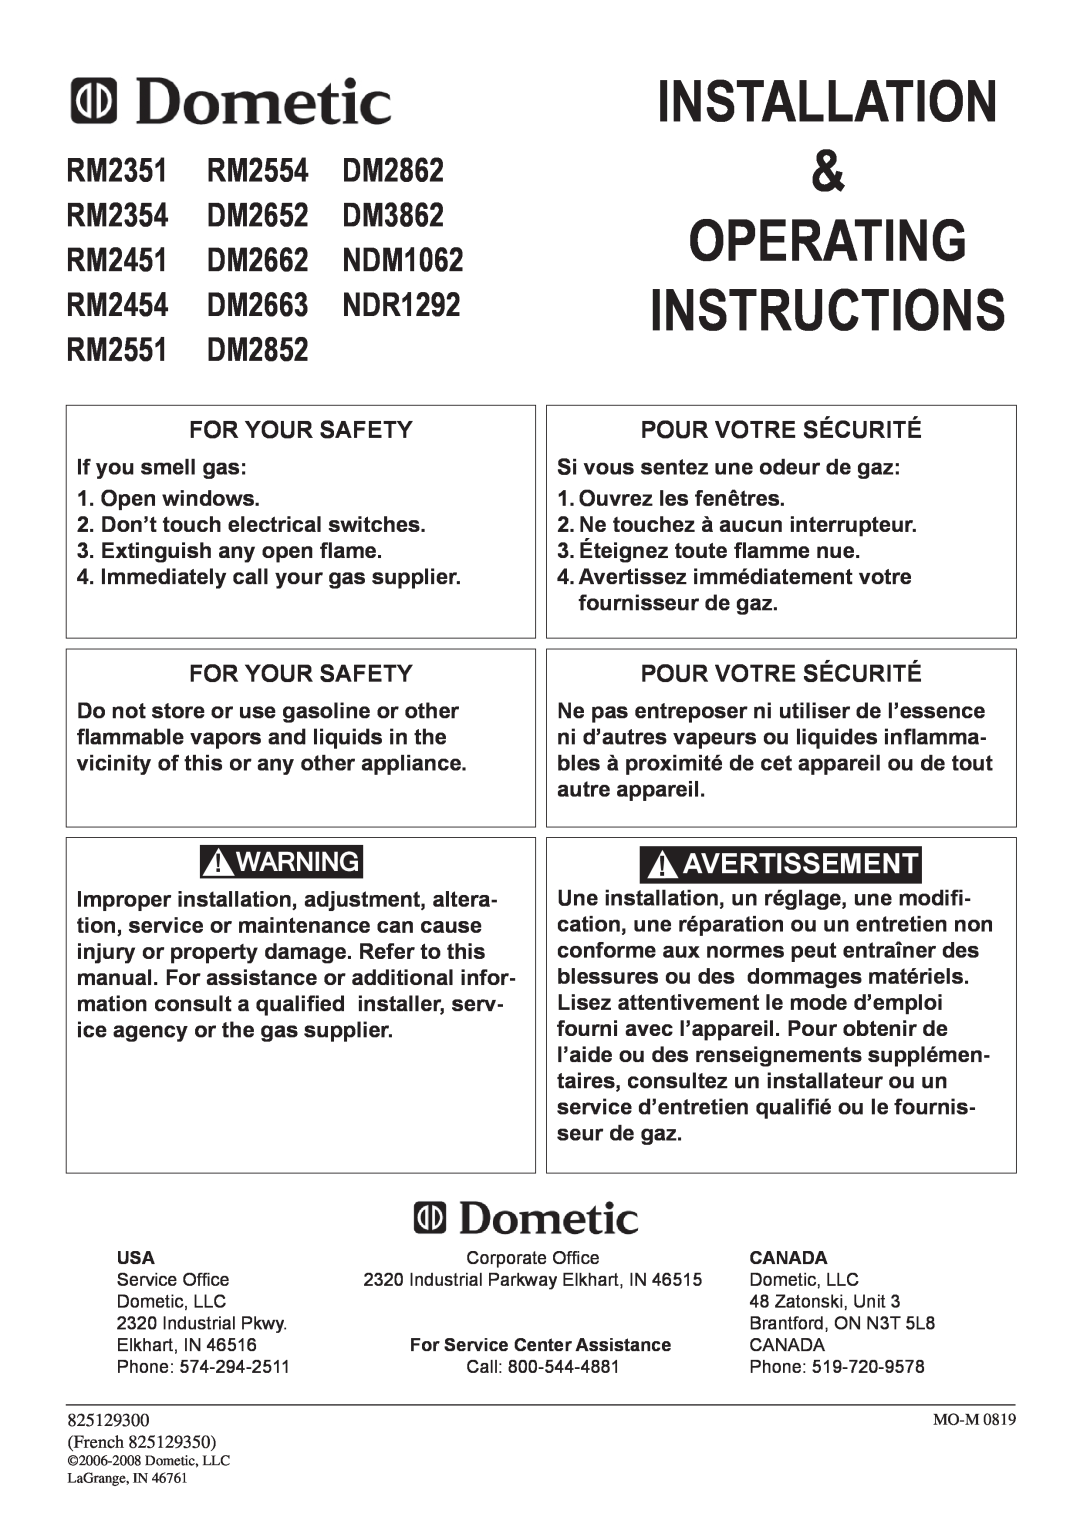 Dometic DM2862 manual installation, operating instructions, Avertissement, For Your Safety, Pour votre sécurité 